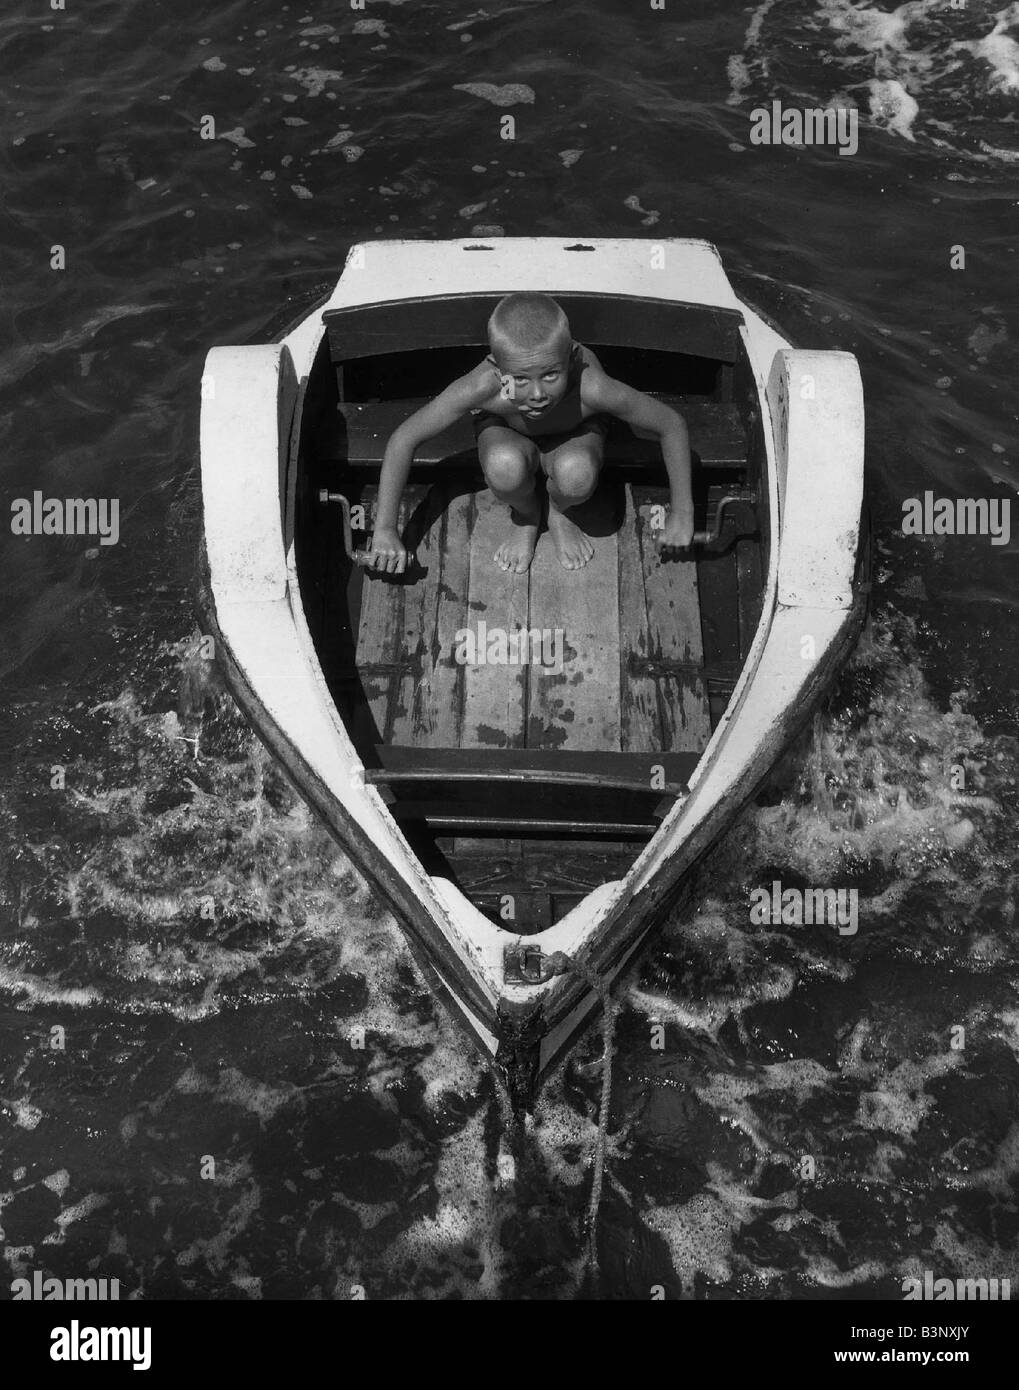 Les jeunes peu Keith voiles de Chelmsford, dans son bateau à aubes maison de vacances bord de mer Enfance Sticking out tongue Août 1963 AfairScenes Banque D'Images